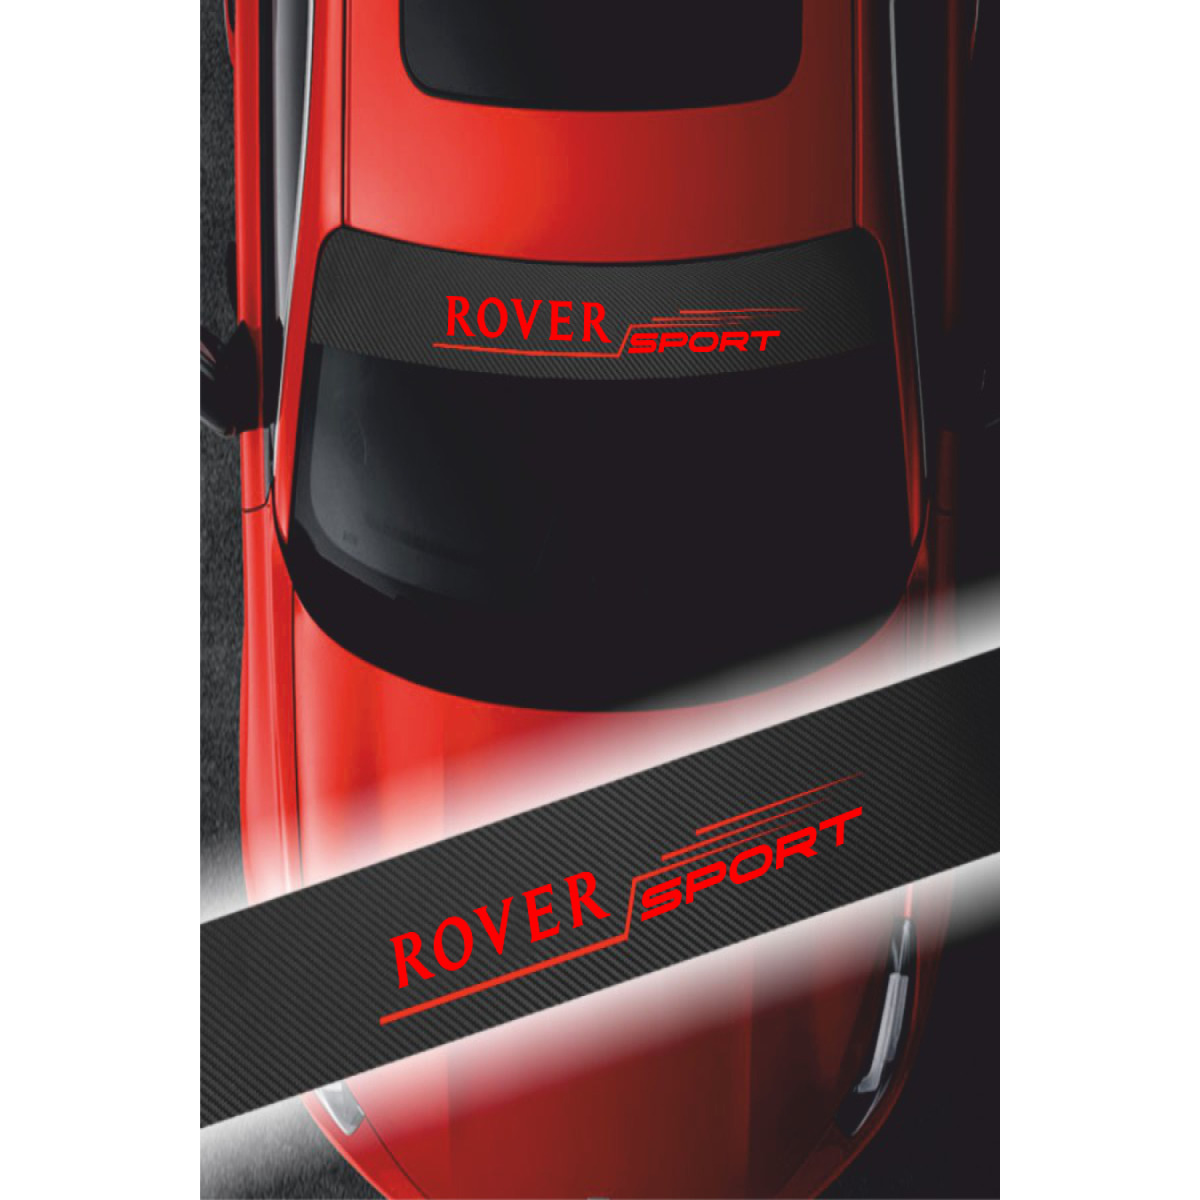 Rover 75 Ön Cam Oto Sticker